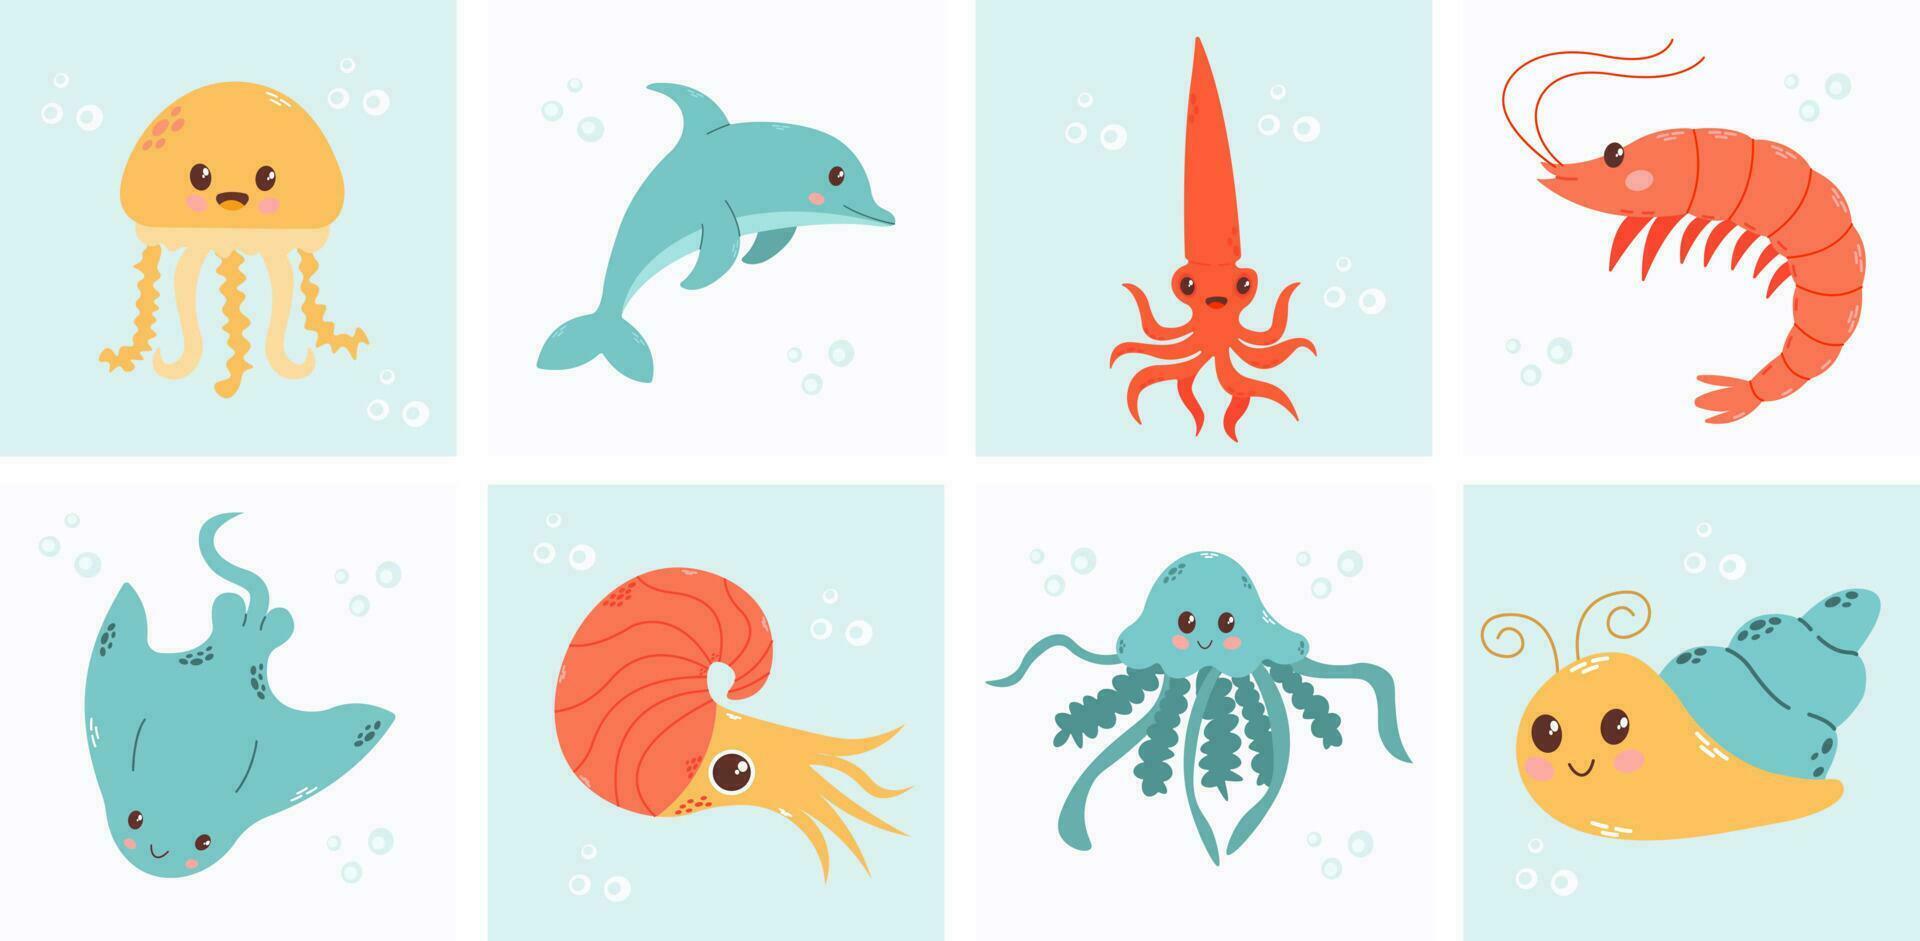 uppsättning med hand dragen hav liv element. vektor klotter tecknad serie uppsättning av marin liv objekt för din design. hav liv. söt val, bläckfisk, bläckfisk, stingrocka, manet, fisk, krabba, sjöhäst.